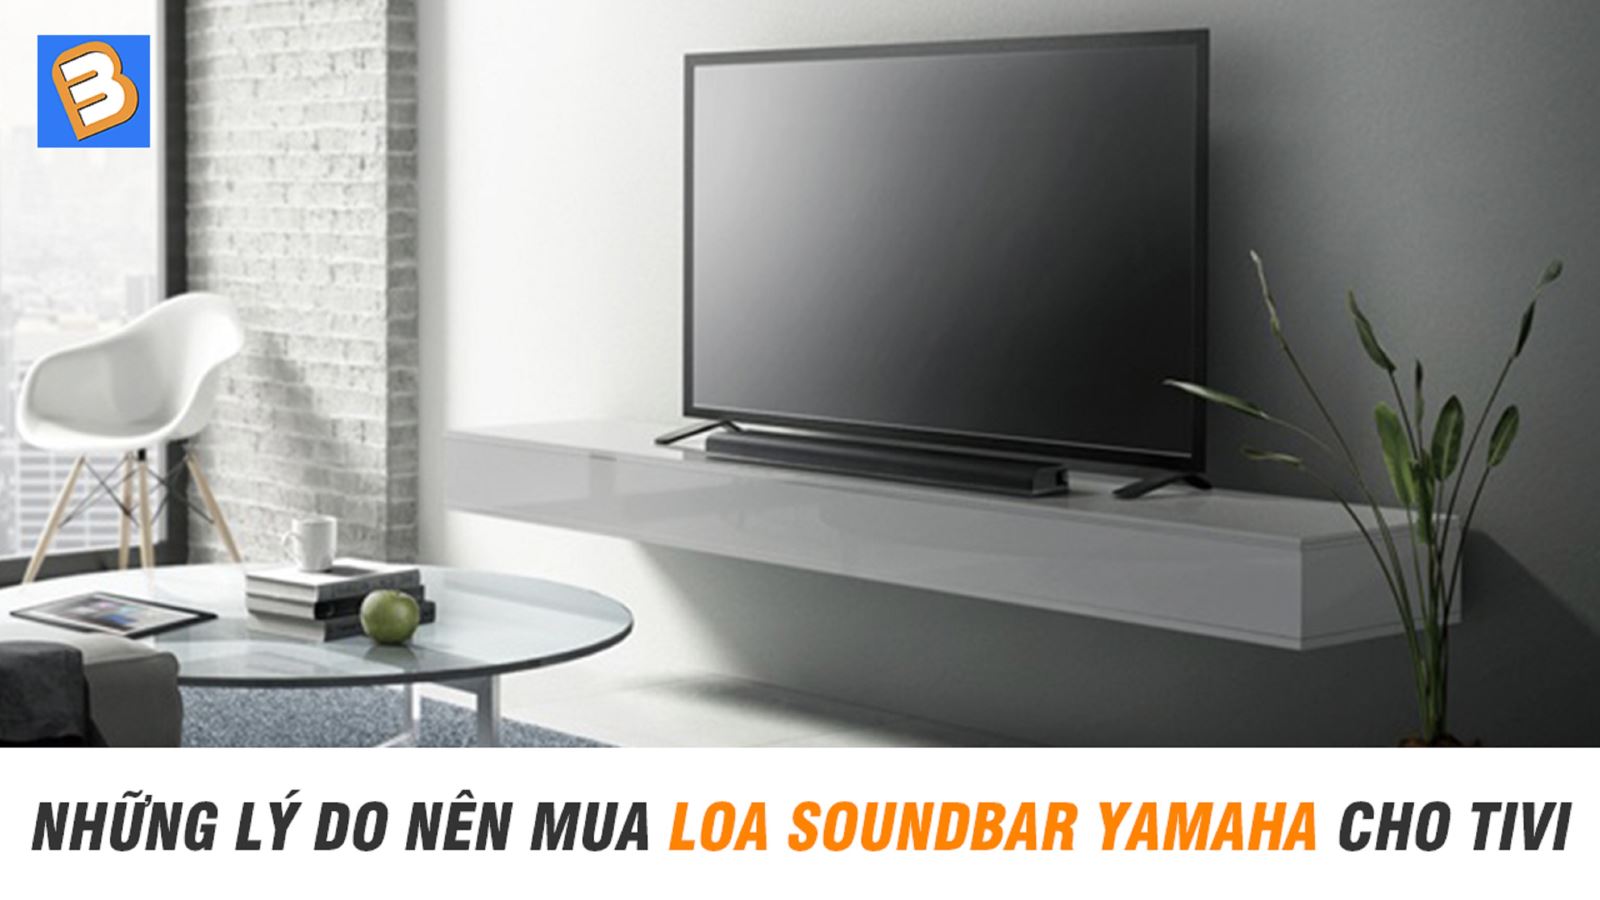 Những lý do nên mua loa soundbar Yamaha cho Tivi